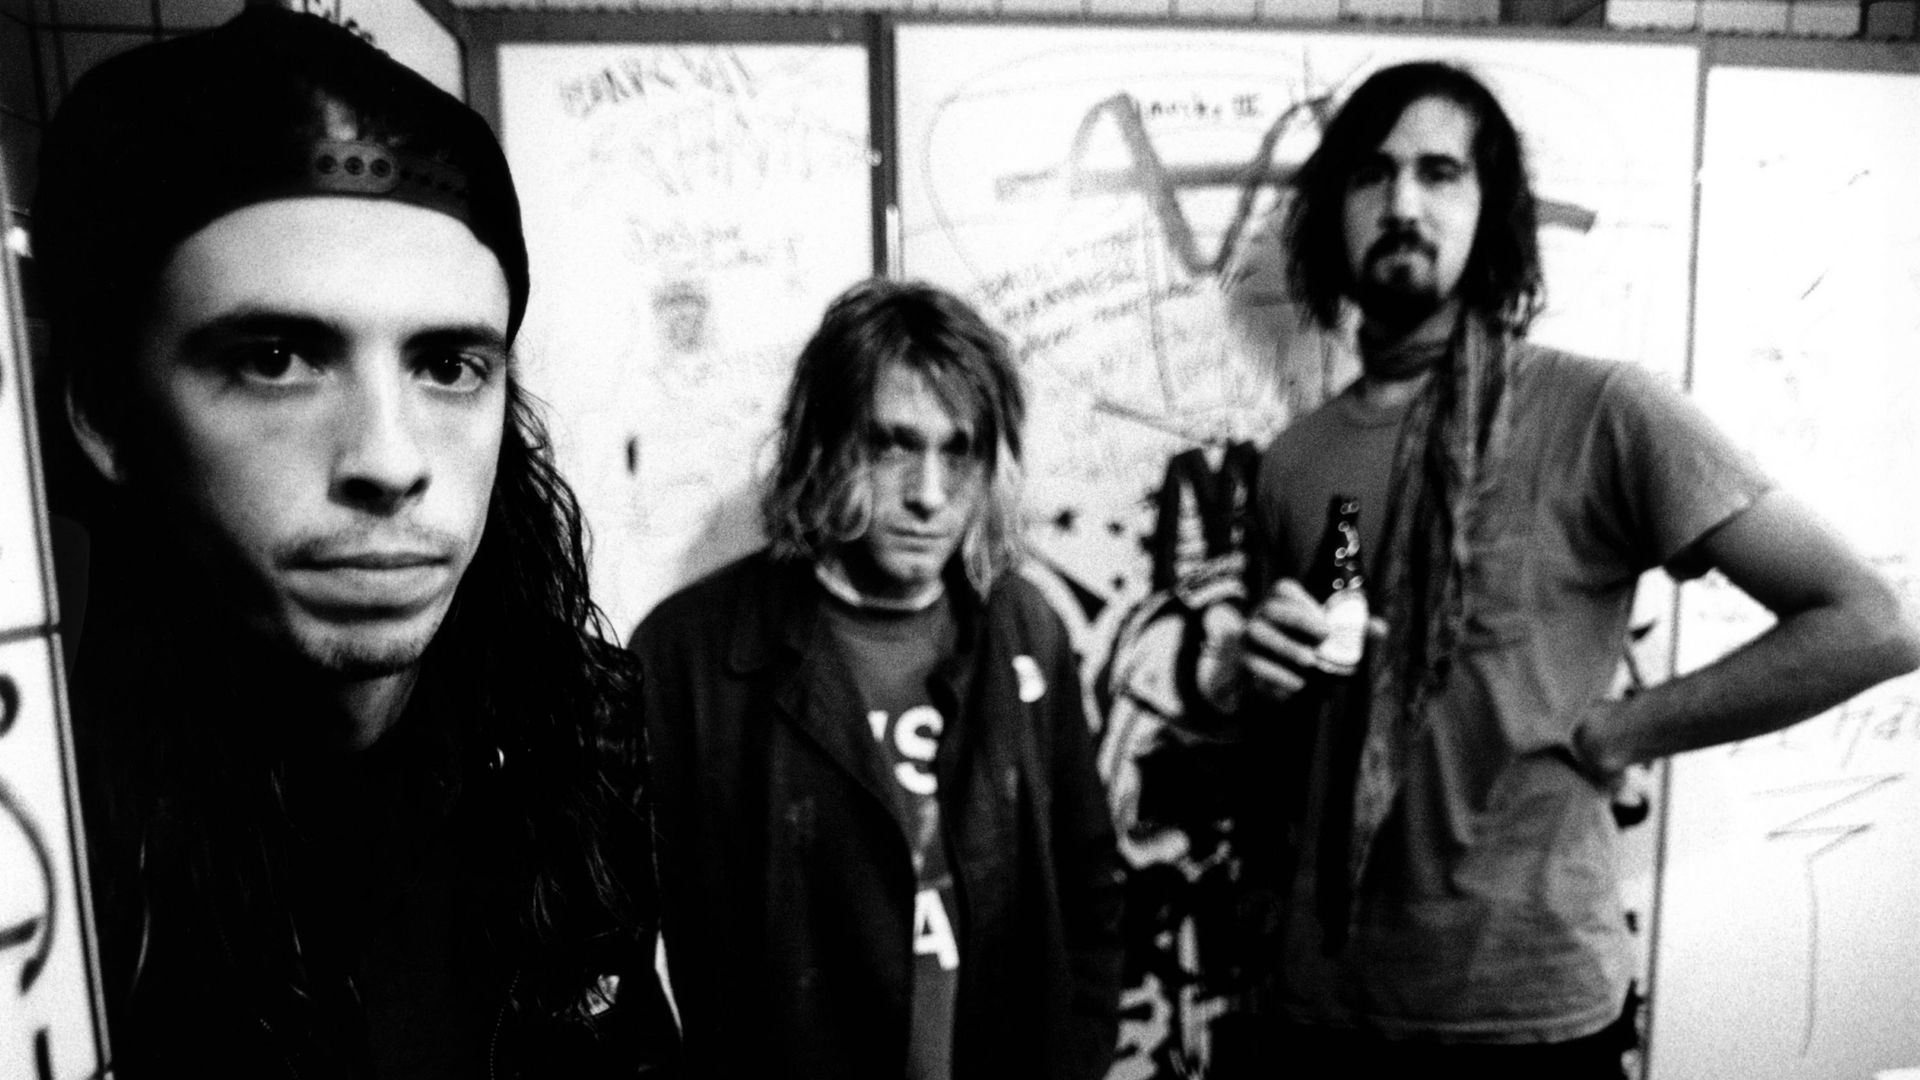 “Kurt era geloso di Dave”: il biografo ufficiale dei Nirvana spiega perché Kurt Cobain “si arrese” a Dave Grohl